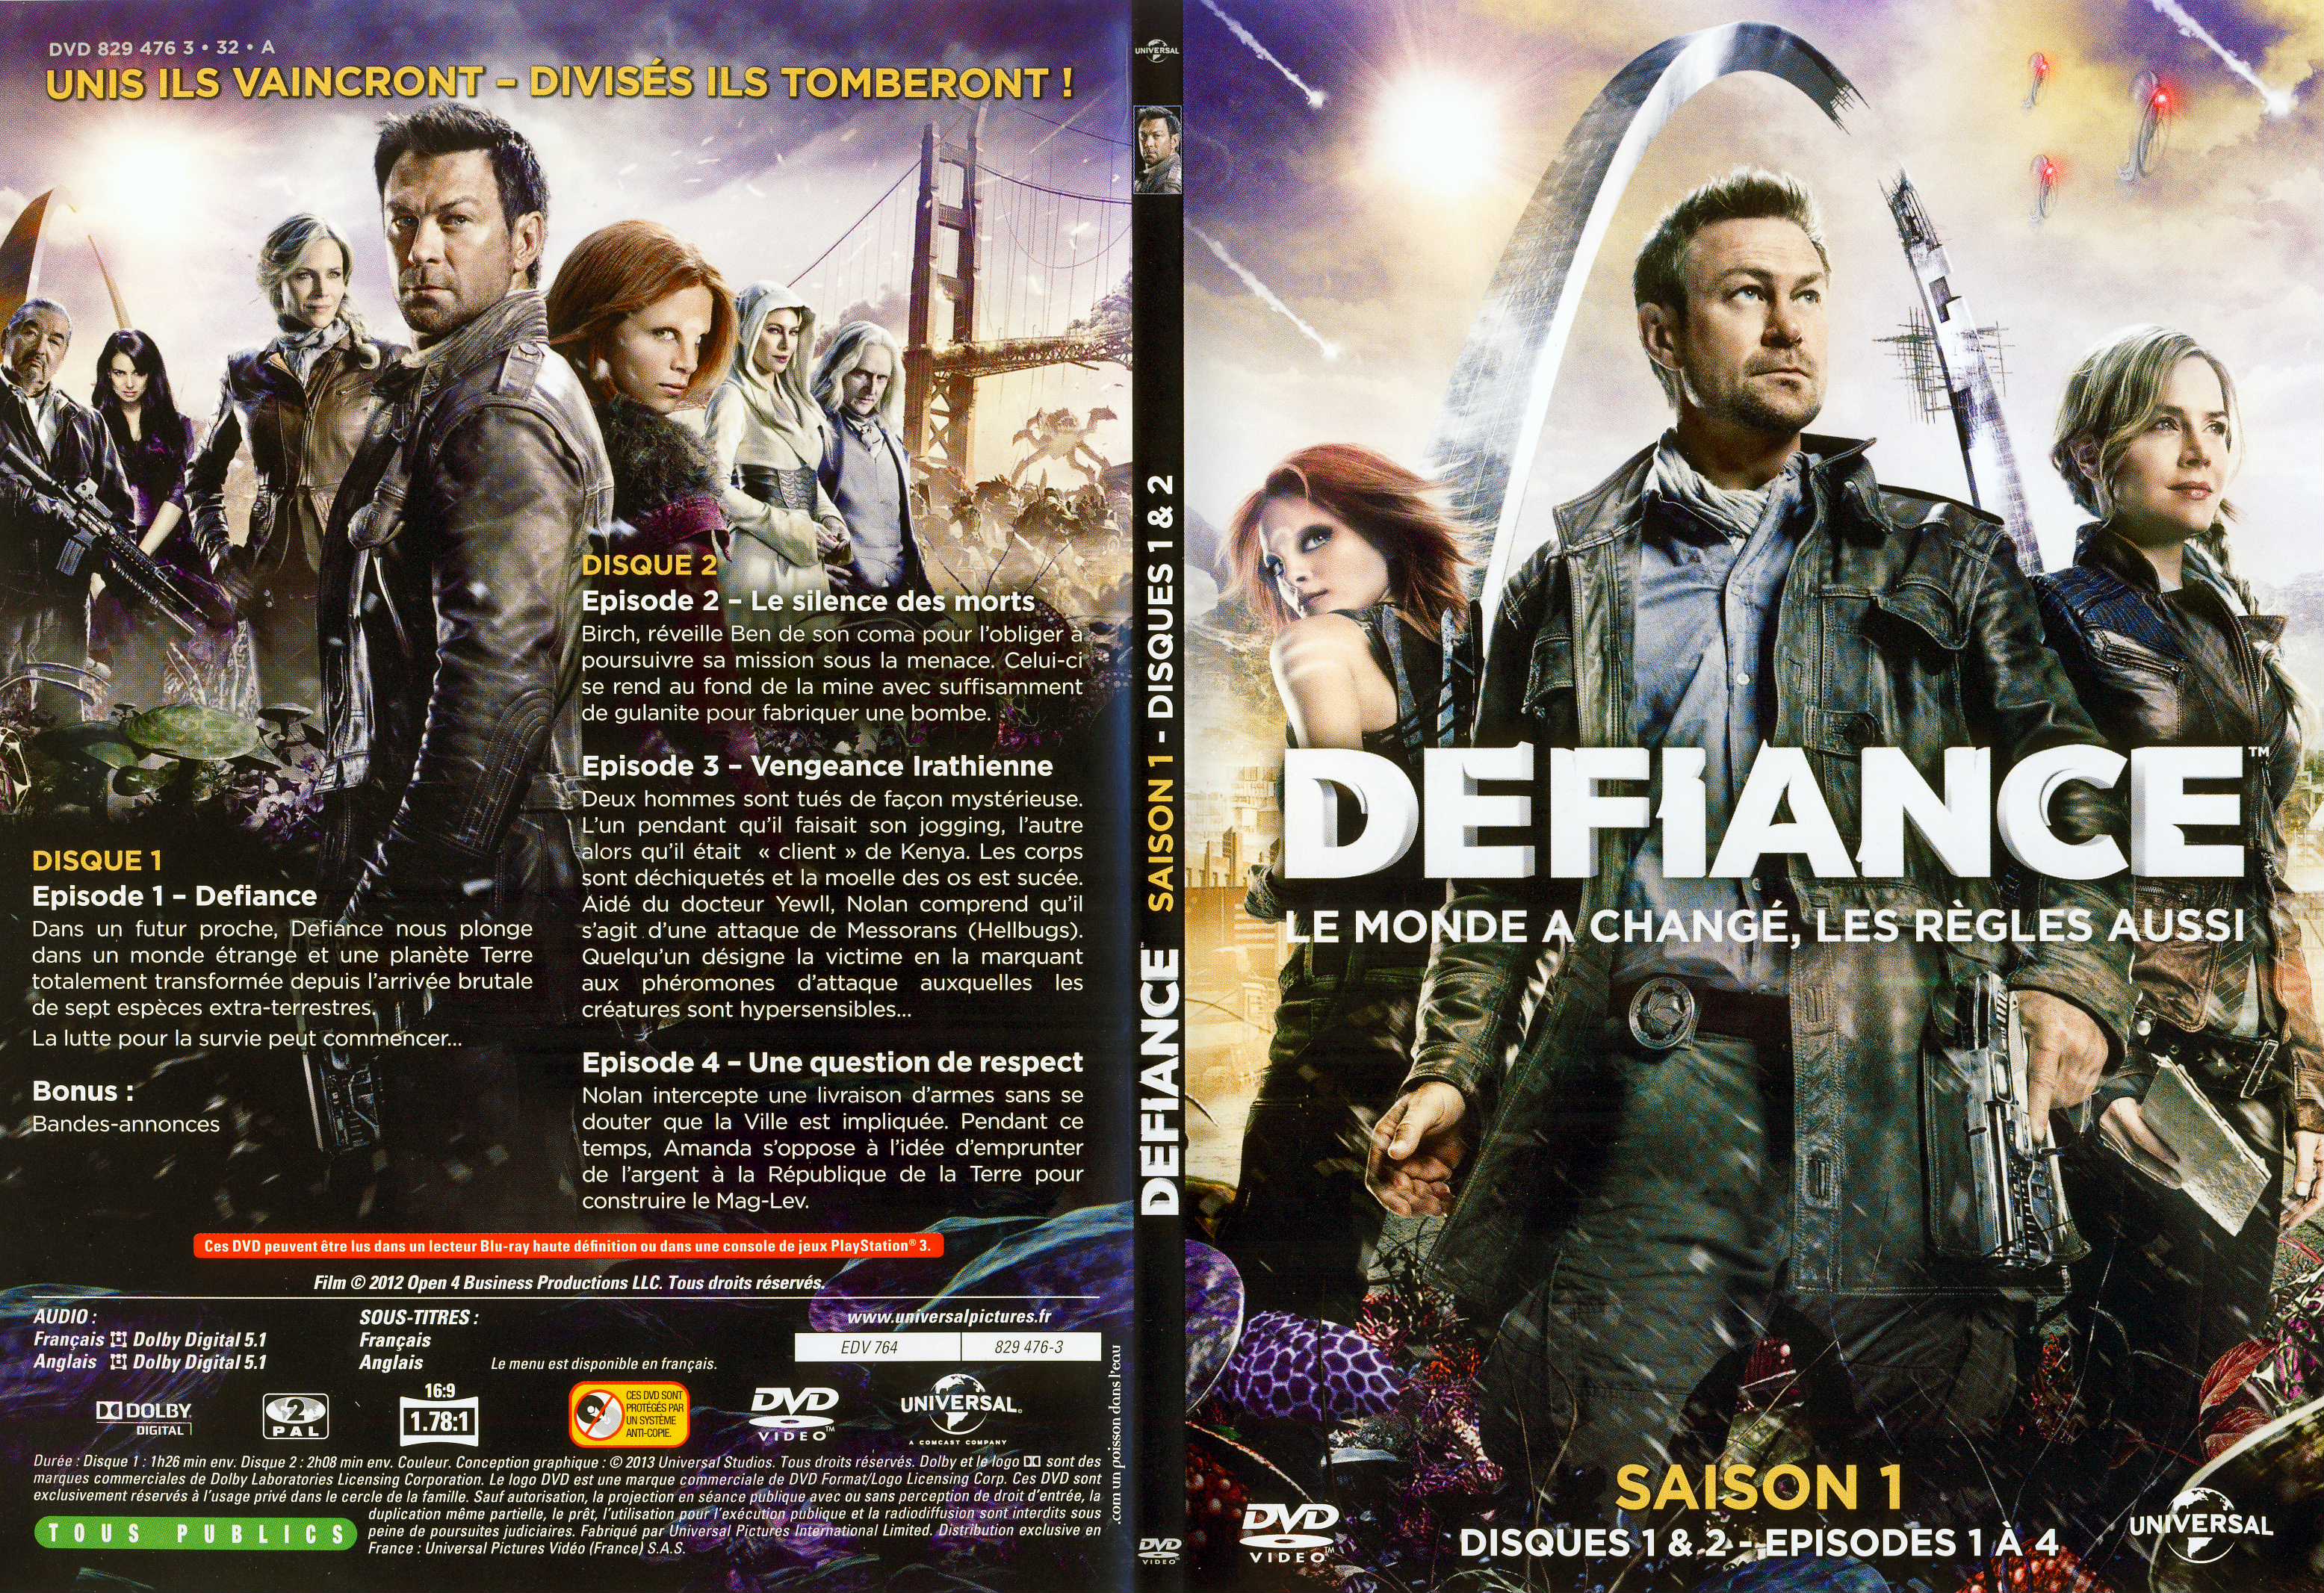 Jaquette DVD Defiance Saison 1 DVD 1